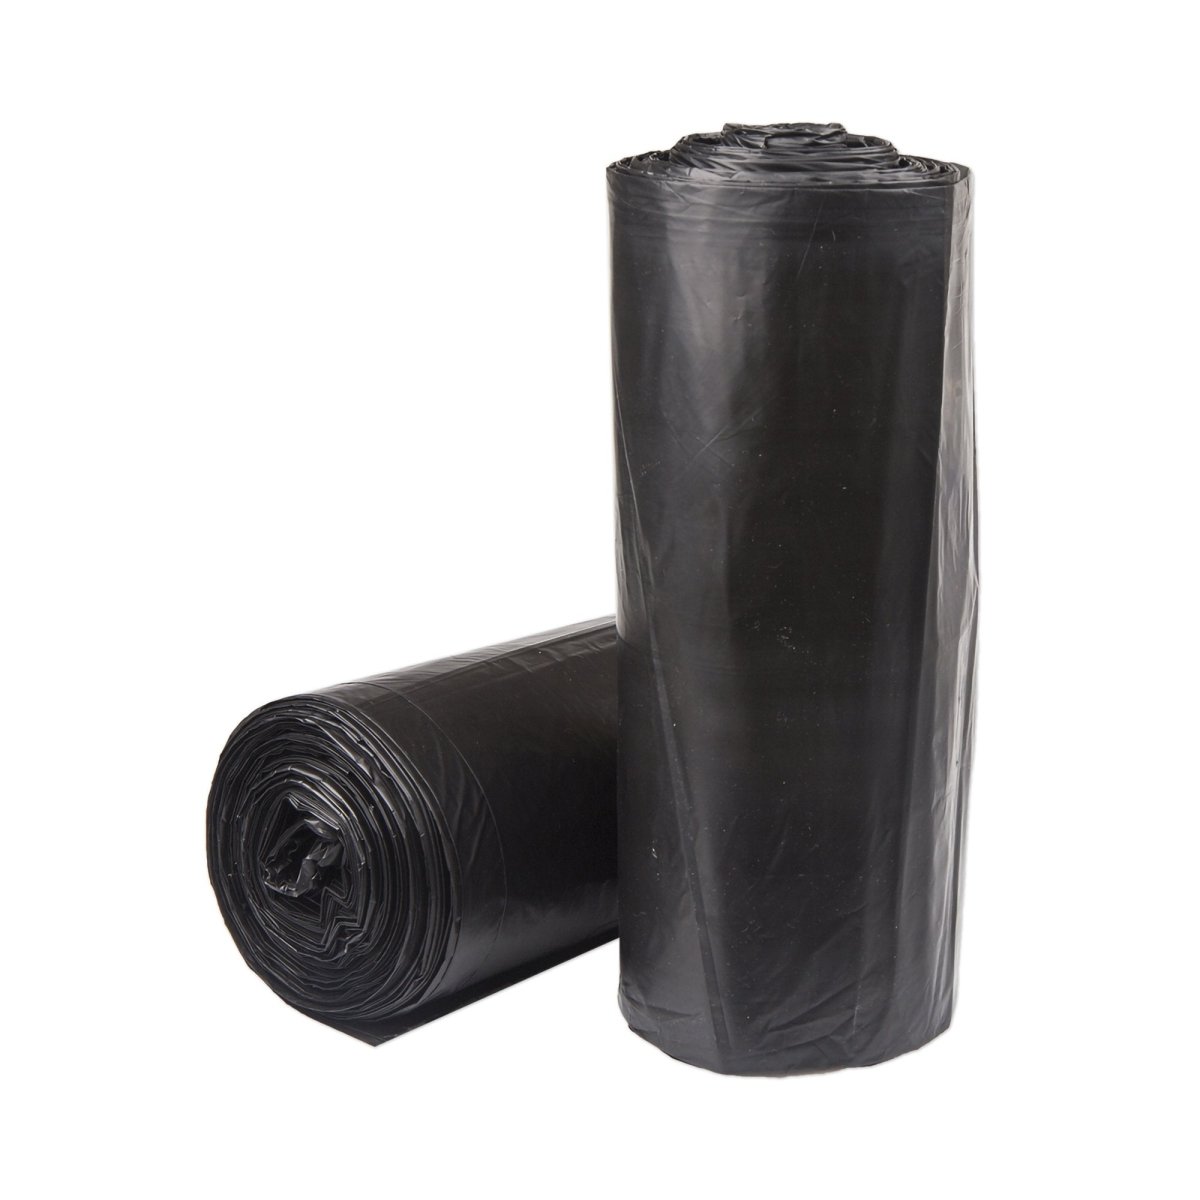 McKesson Super Plus Duty Black Trash Bags, 60 gal, 1.2 Mil - 1137655_CS - 1